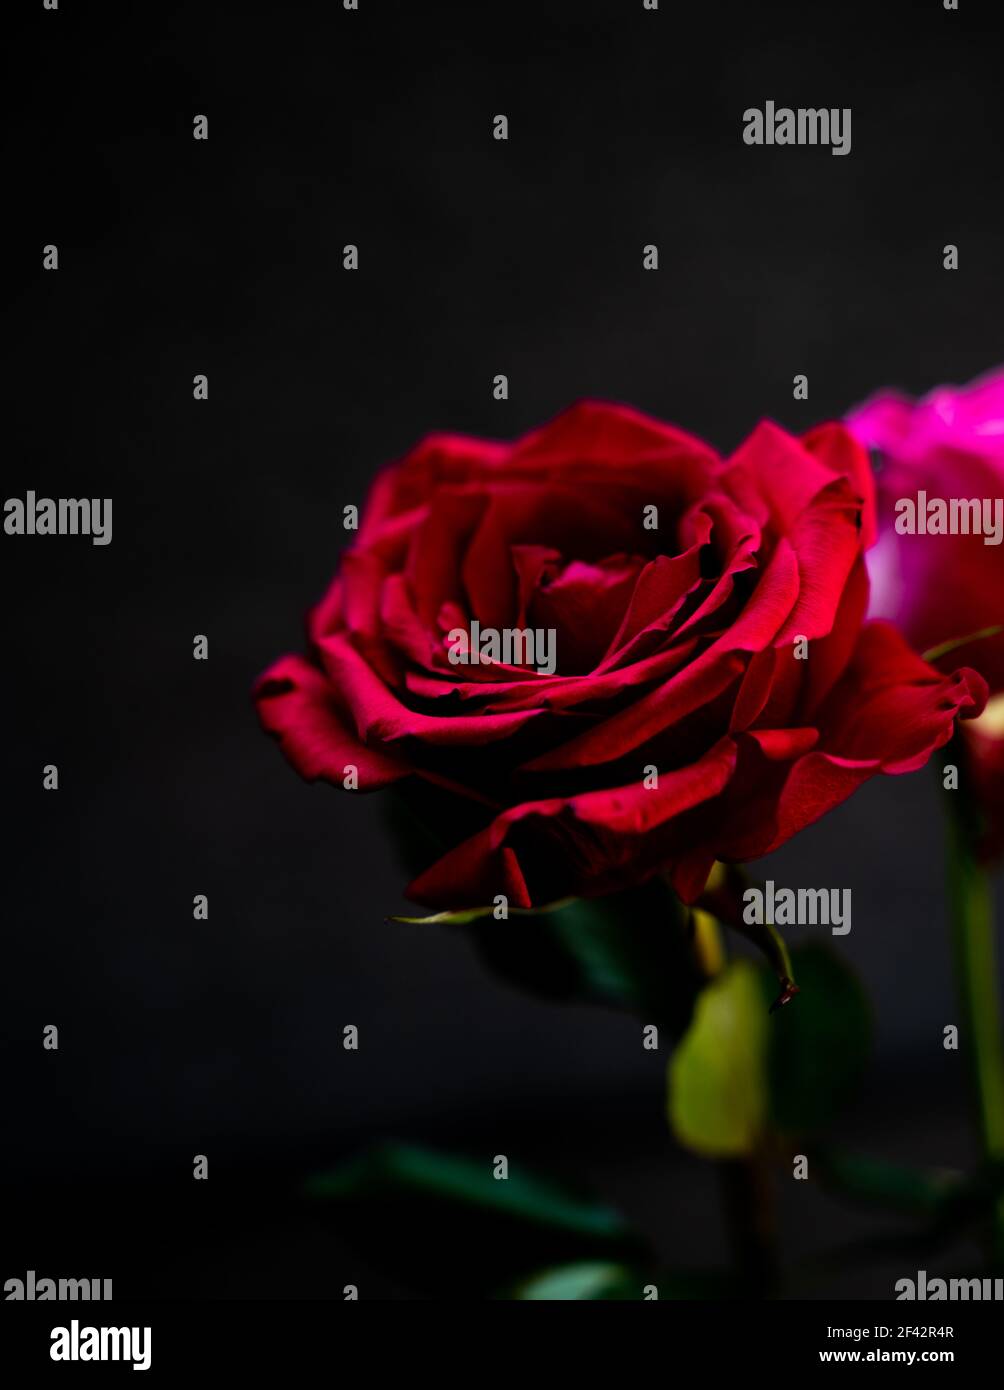 rose rouge magnifique et brillante sur un fond noir et triste ou romantique adapté à vos condoléances ou à vos voeux romantiques. Abstrait et naturel Banque D'Images